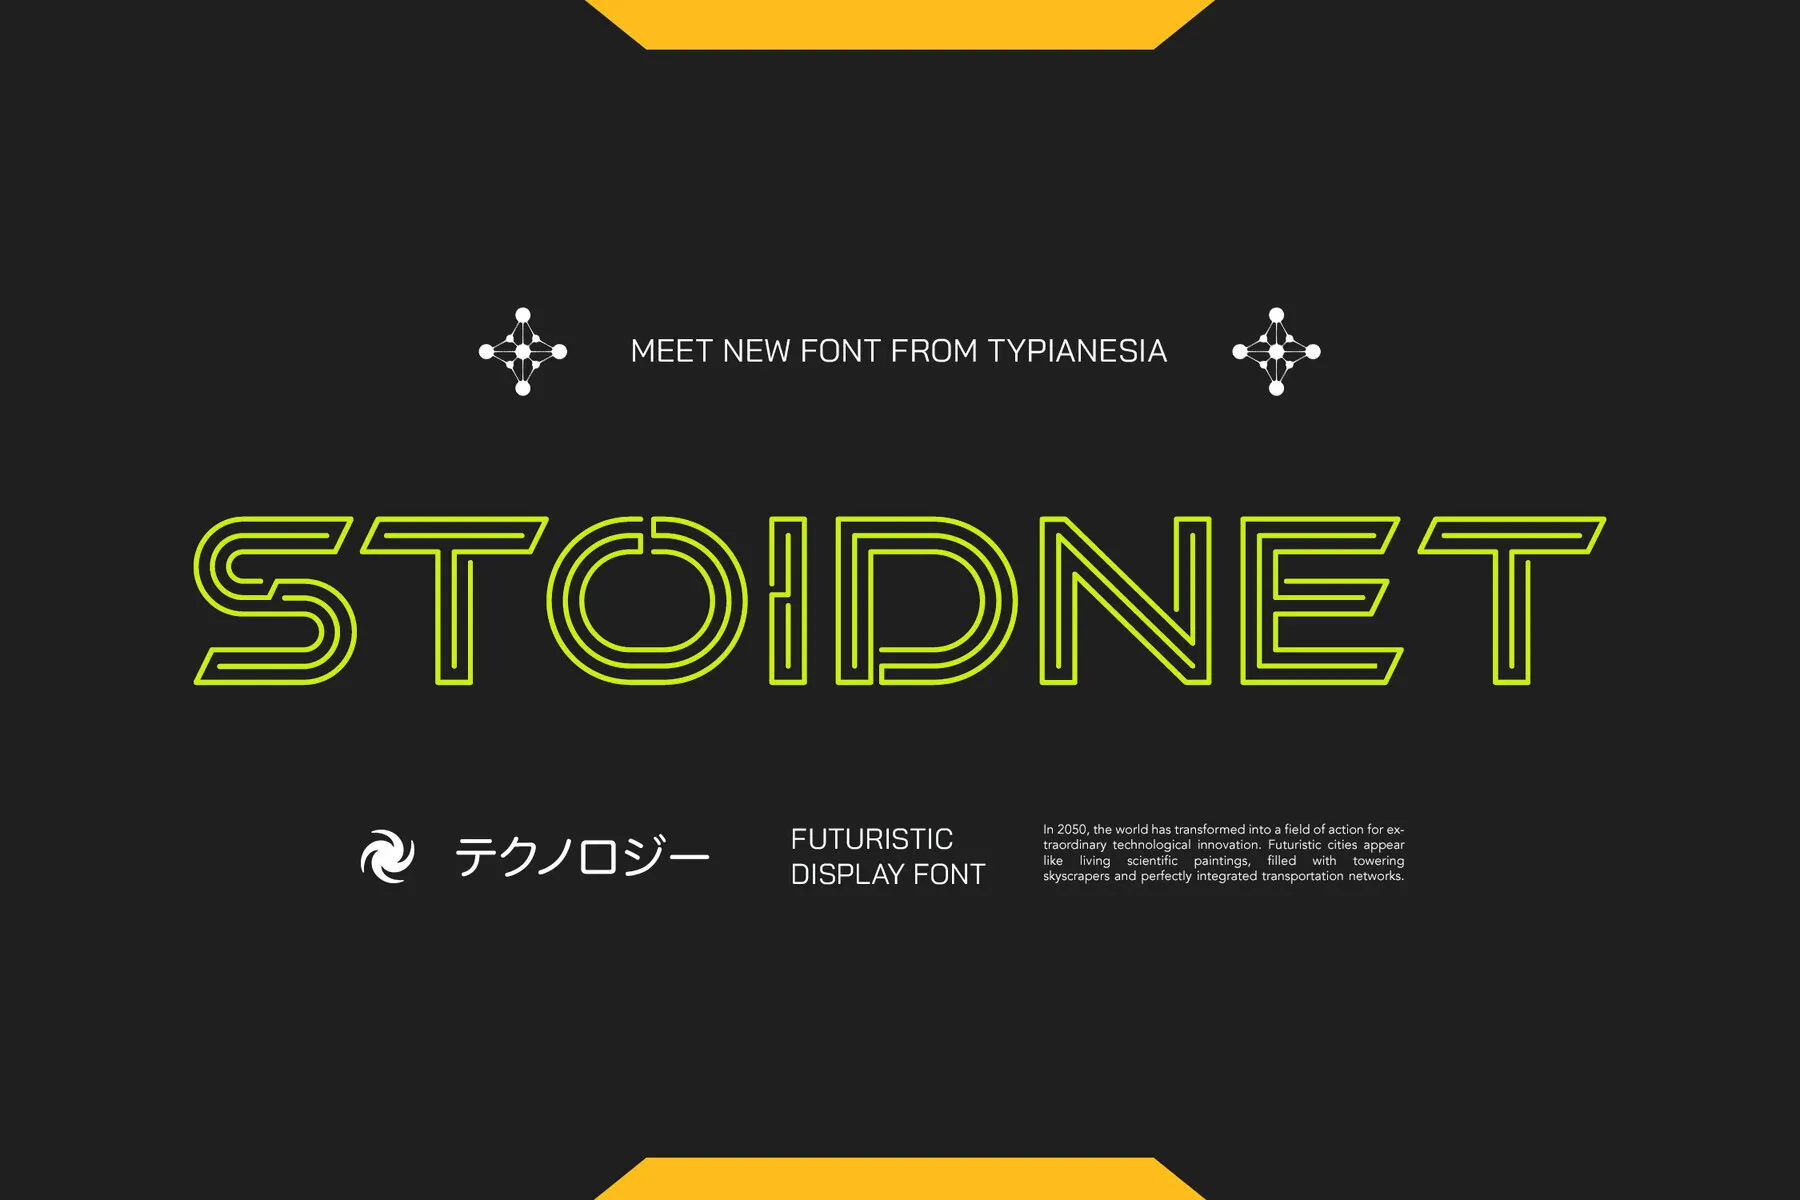 Stoidnet